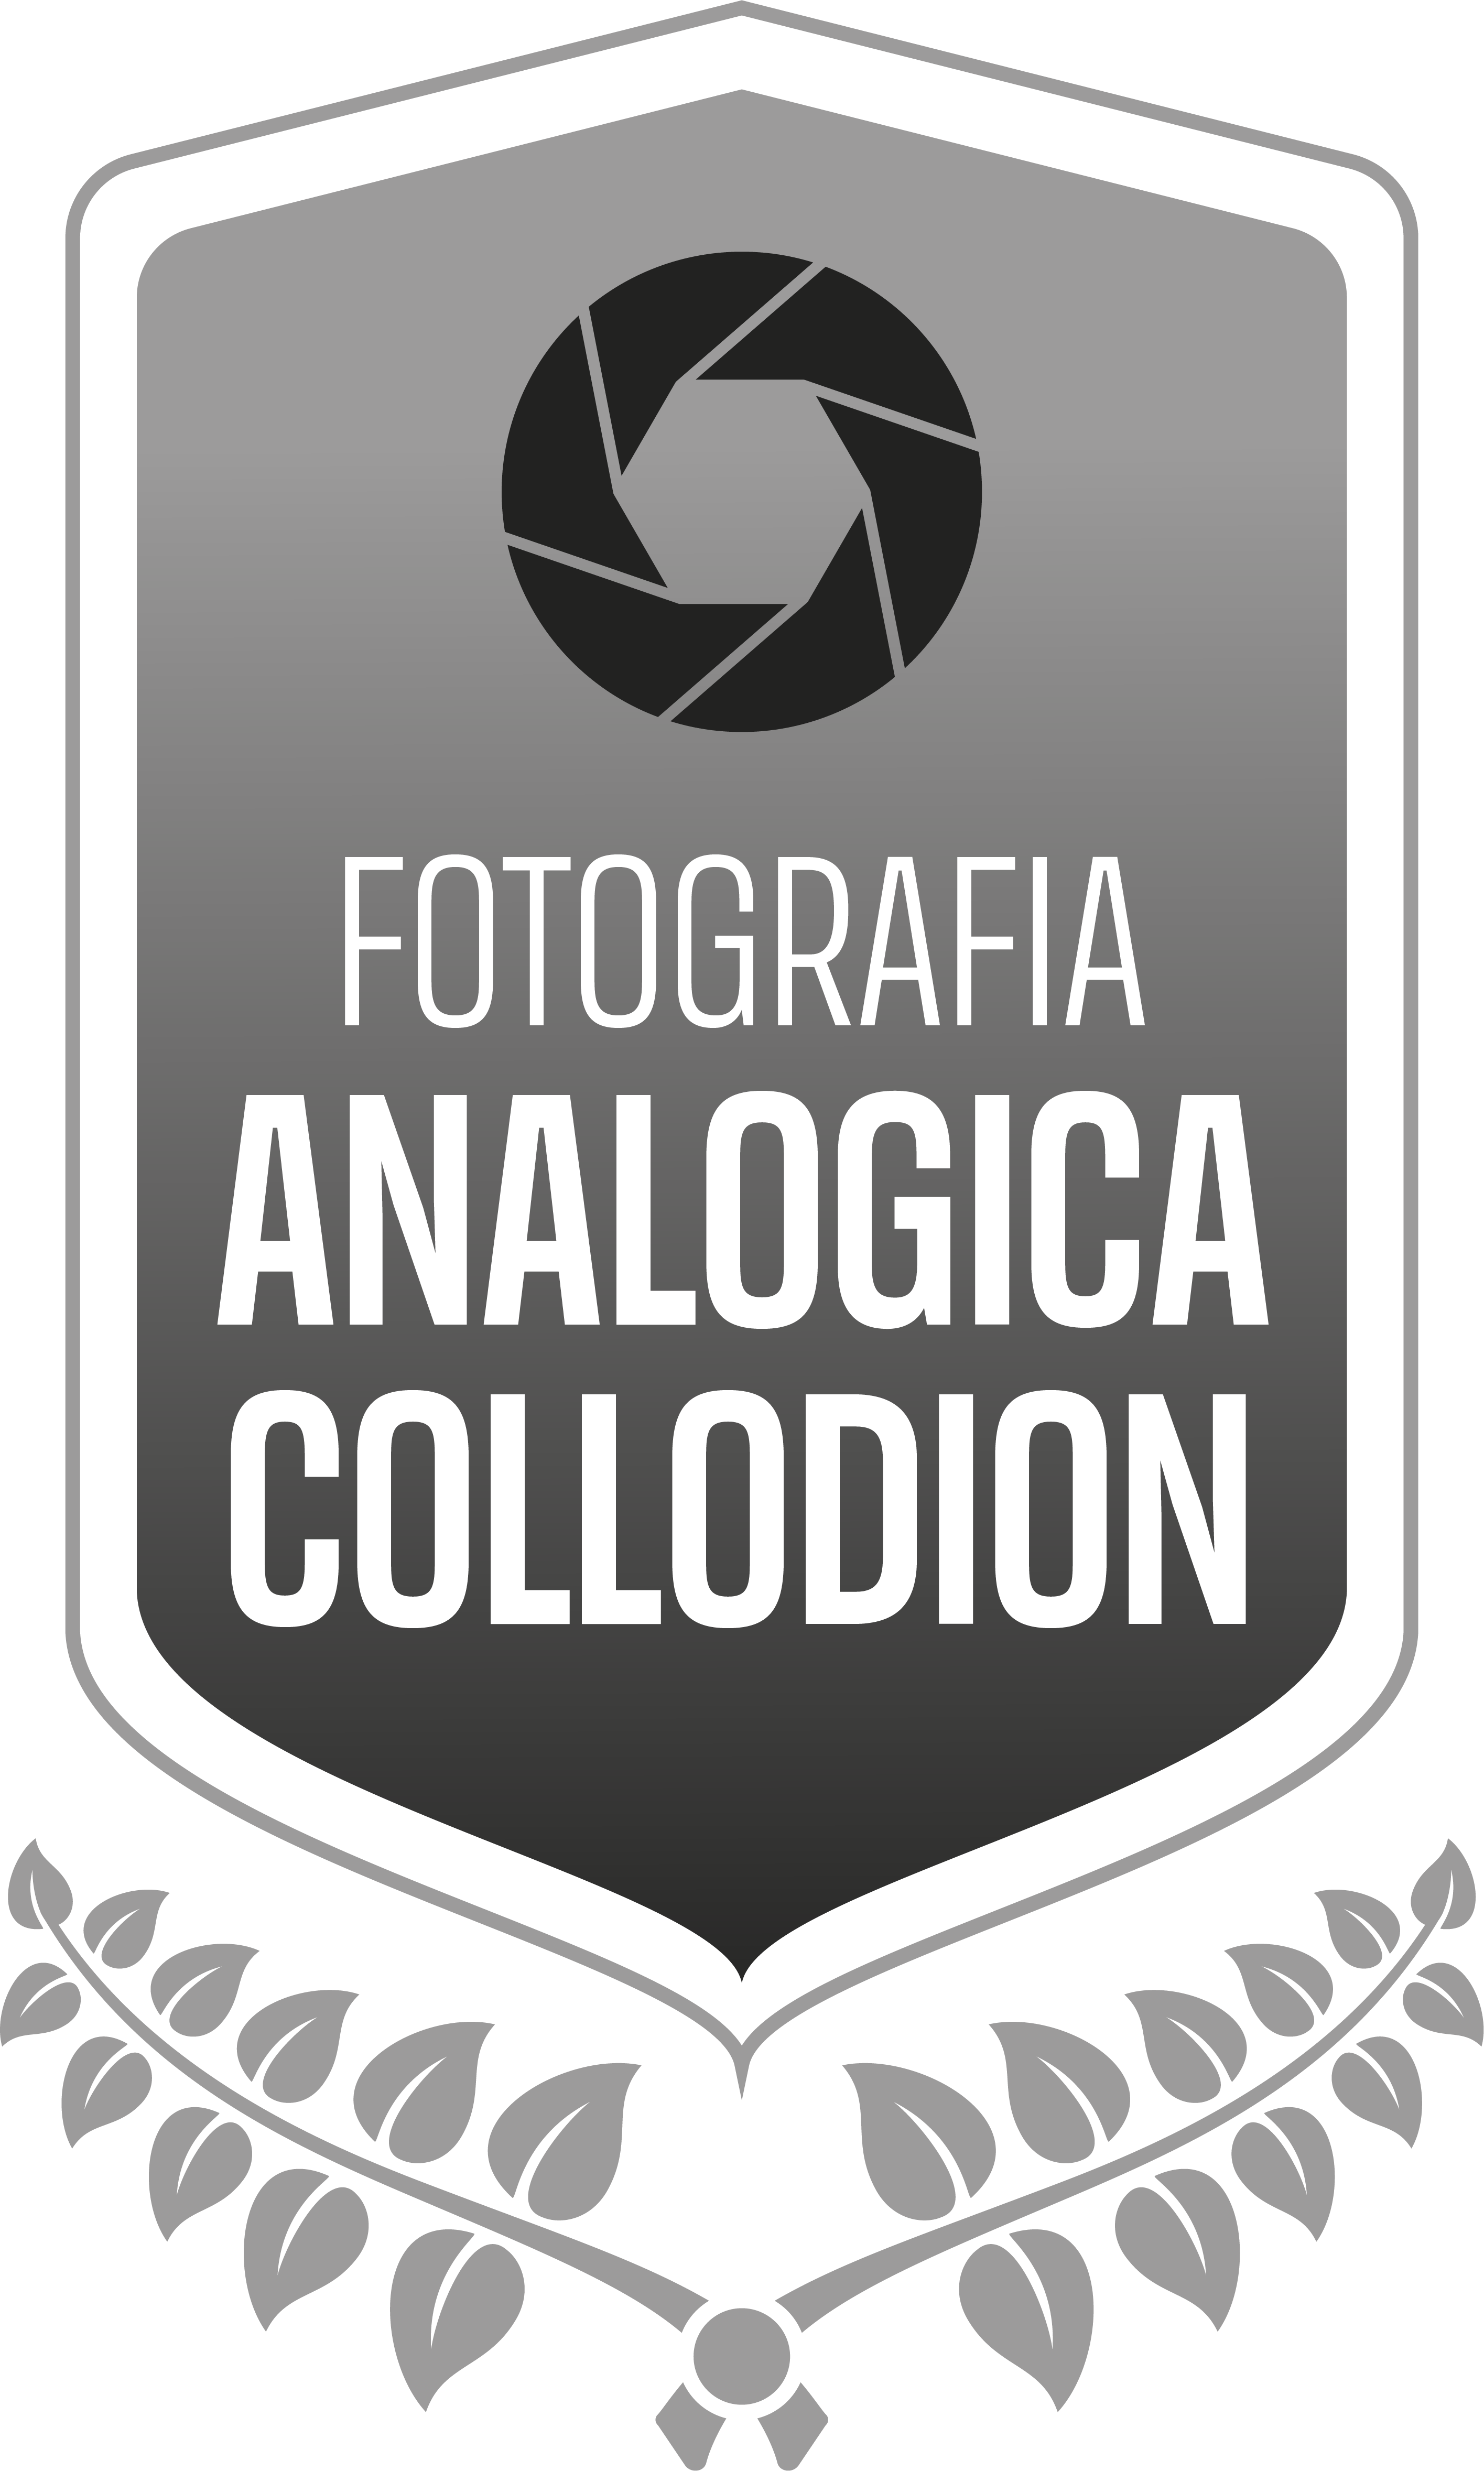 Analogica Collodion logo